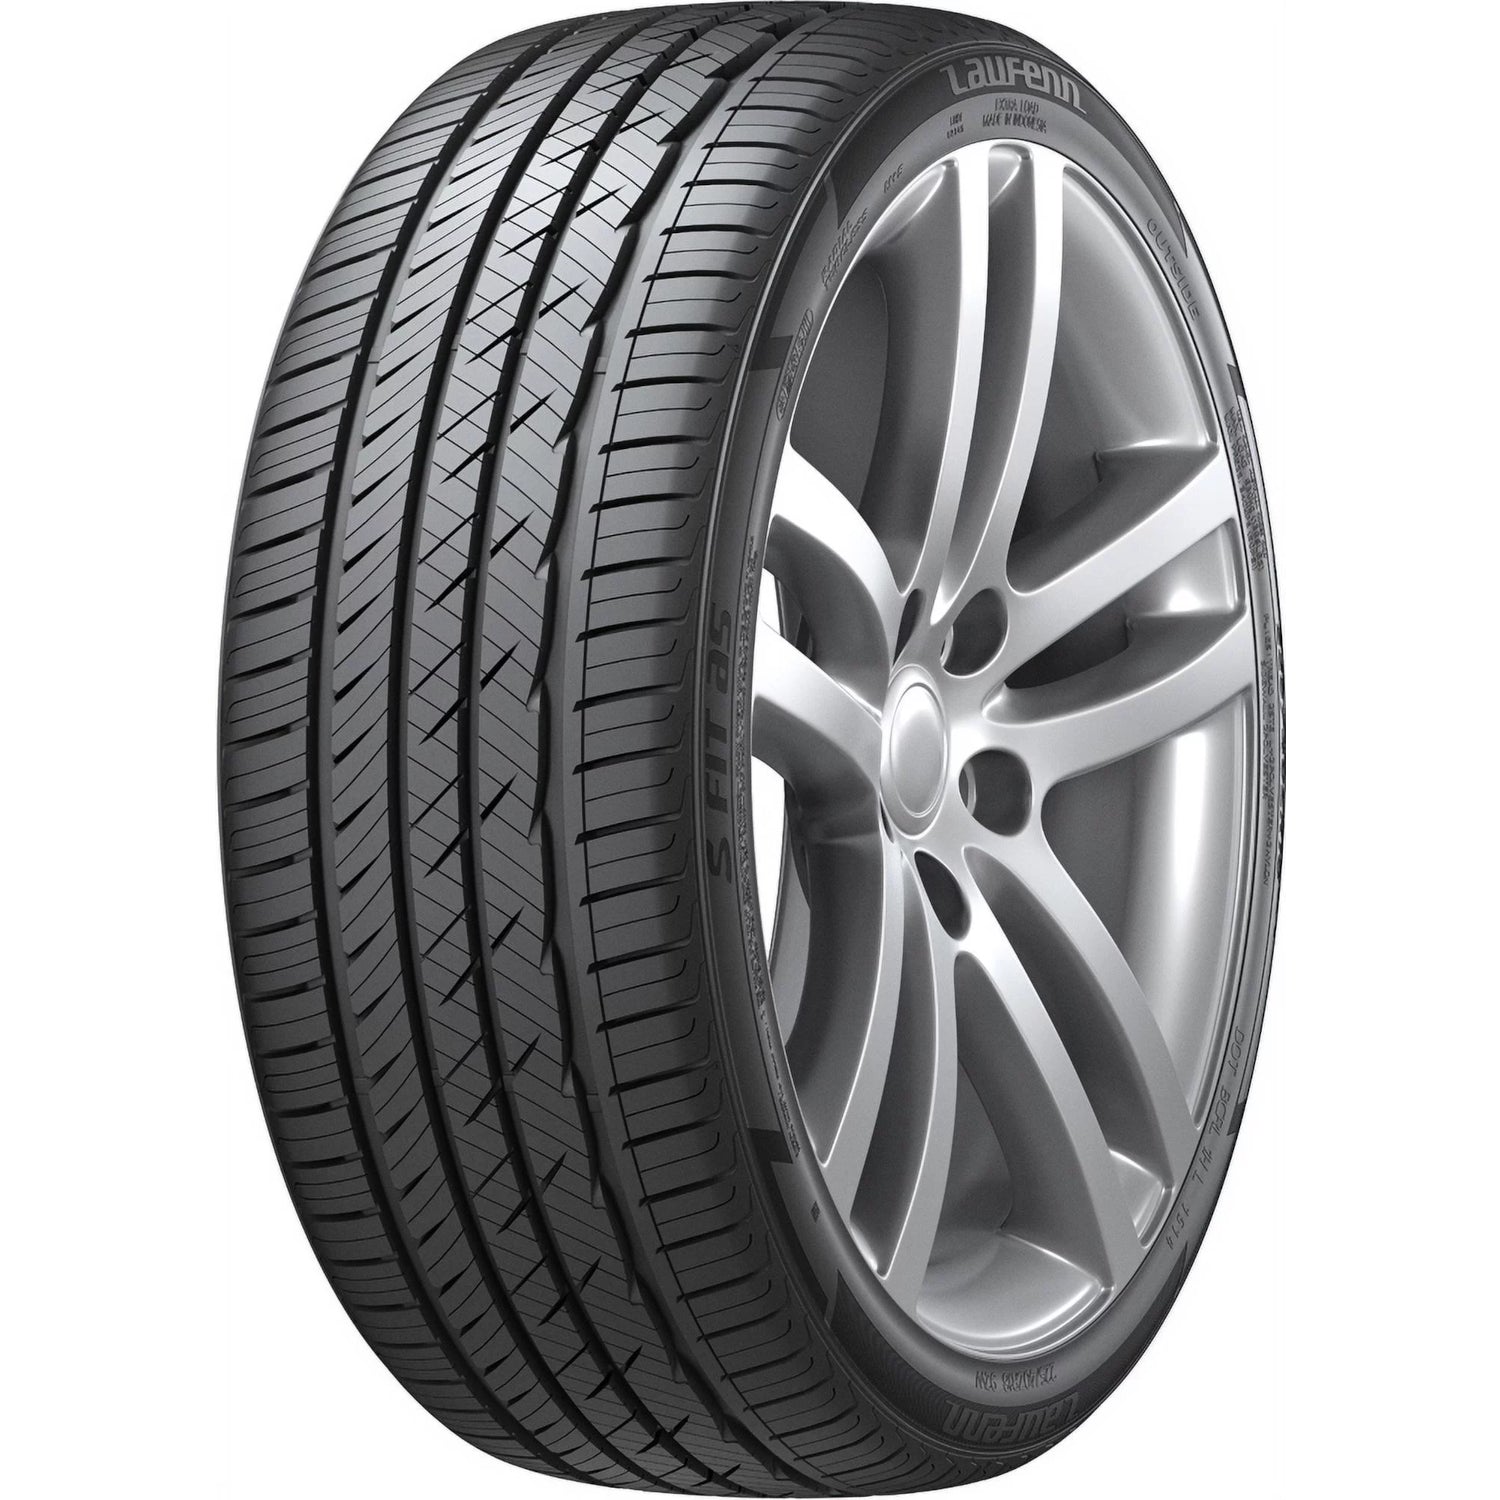 LAUFENN S FIT AS 245/50R18 (27.7X9.7R 18) Tires